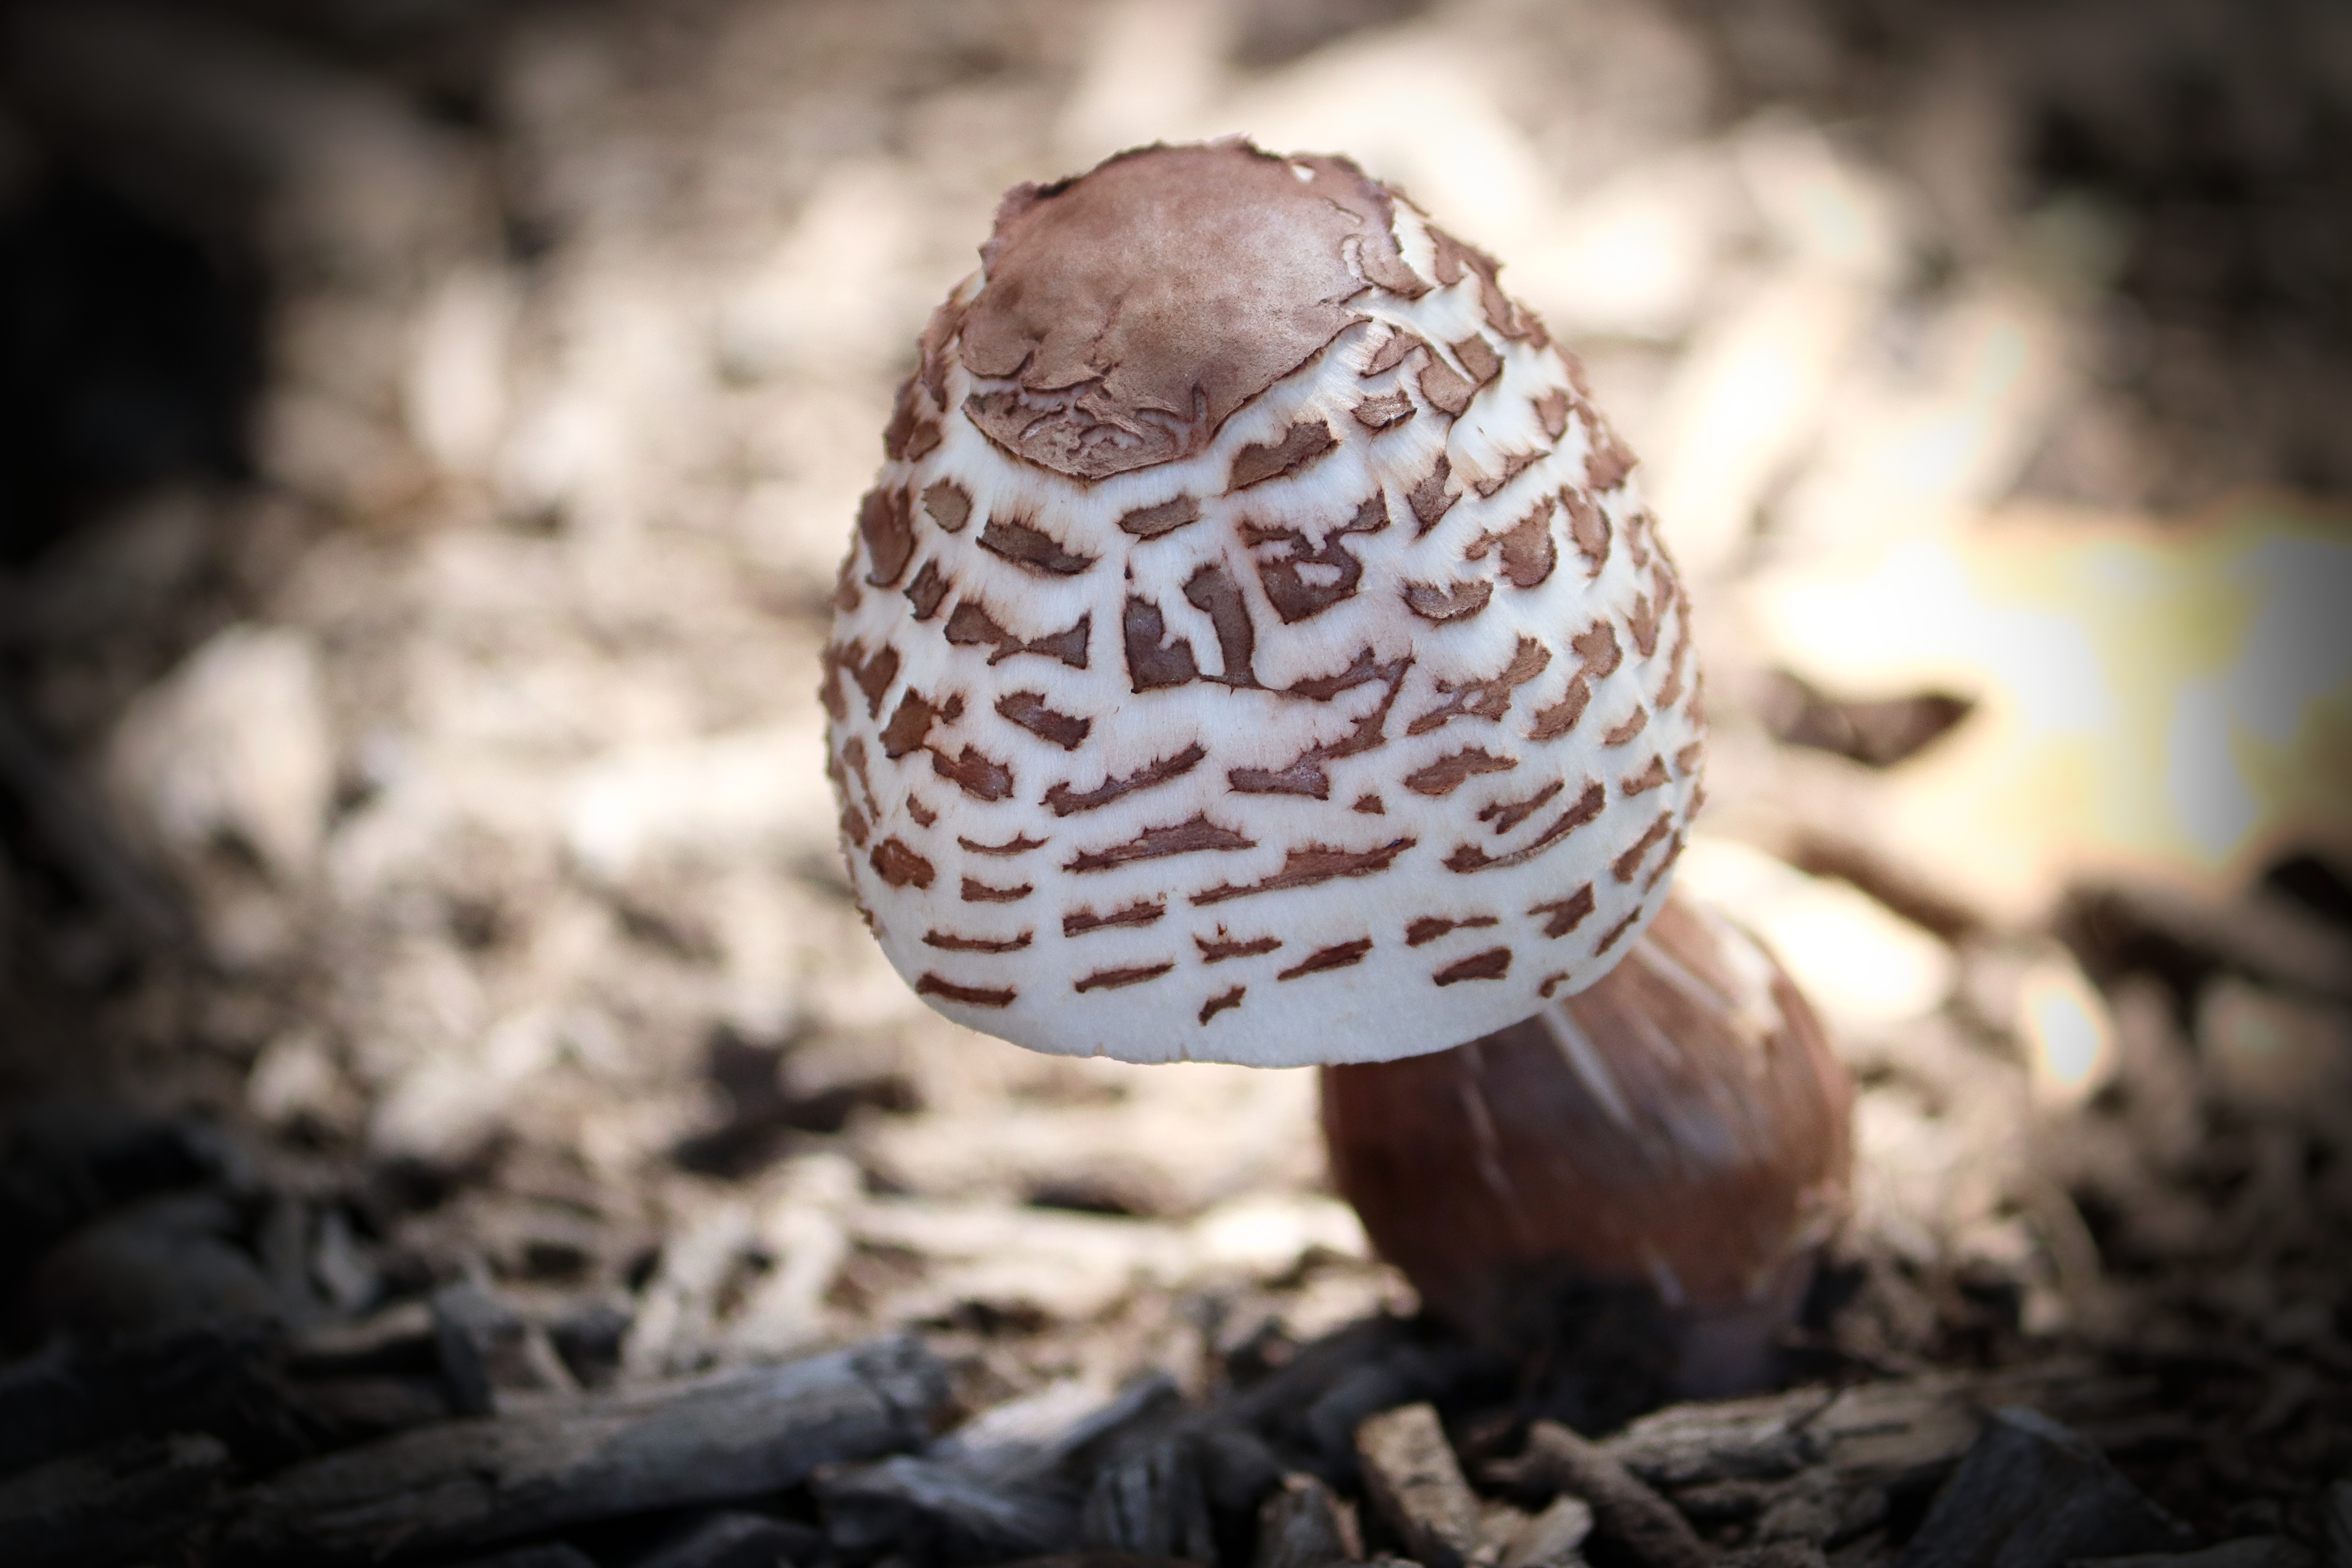 Mushroom on Display